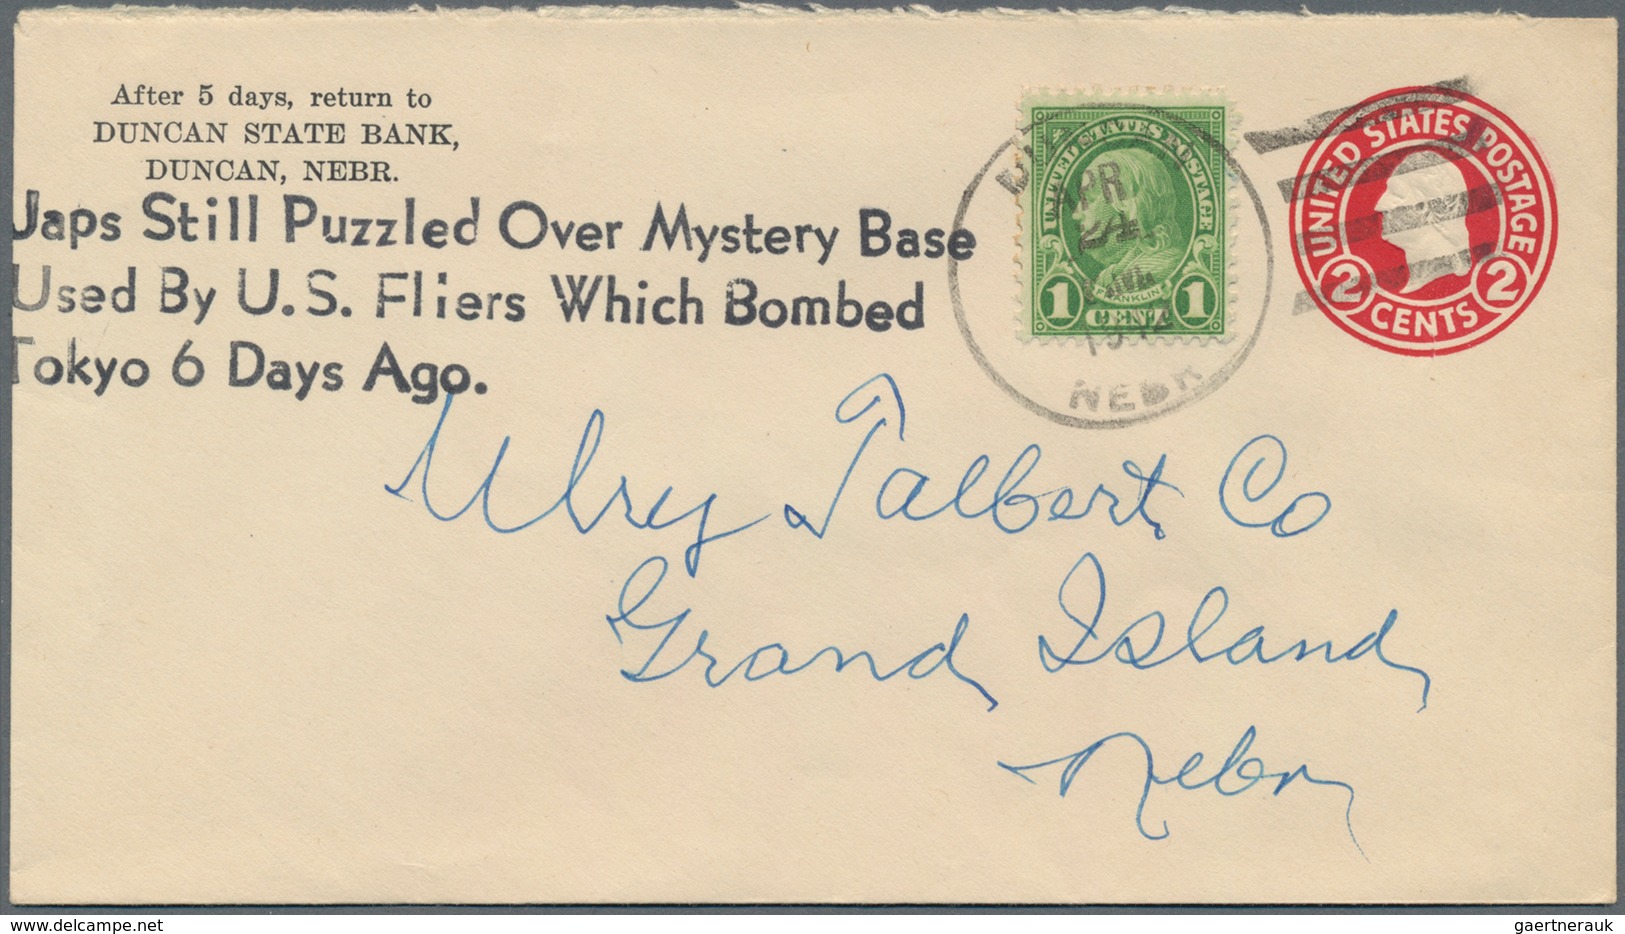 Vereinigte Staaten Von Amerika - Stempel: 1942 Used Postal Stationery Envelope 2 Cents Red On White - Poststempel